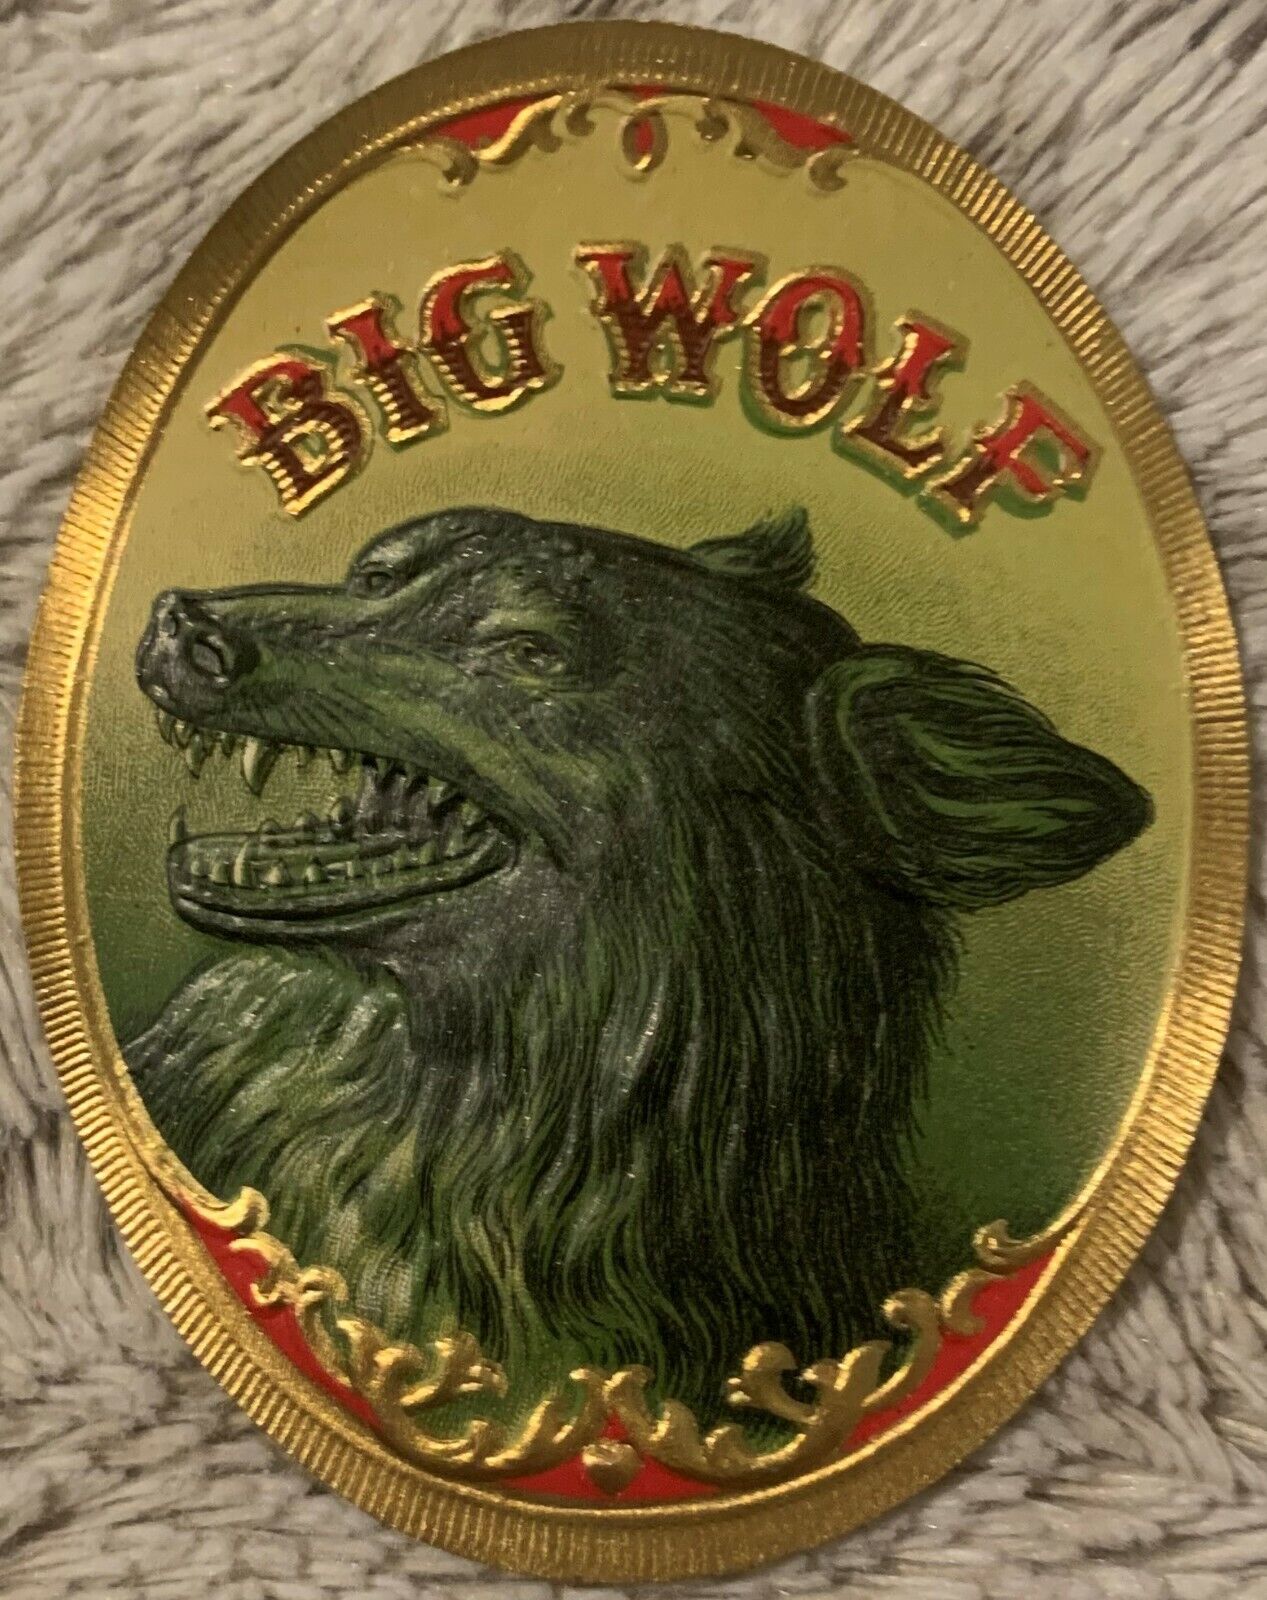 Antique Vintage Big Wolf Embossed Cigar Label 1900s - 1920s